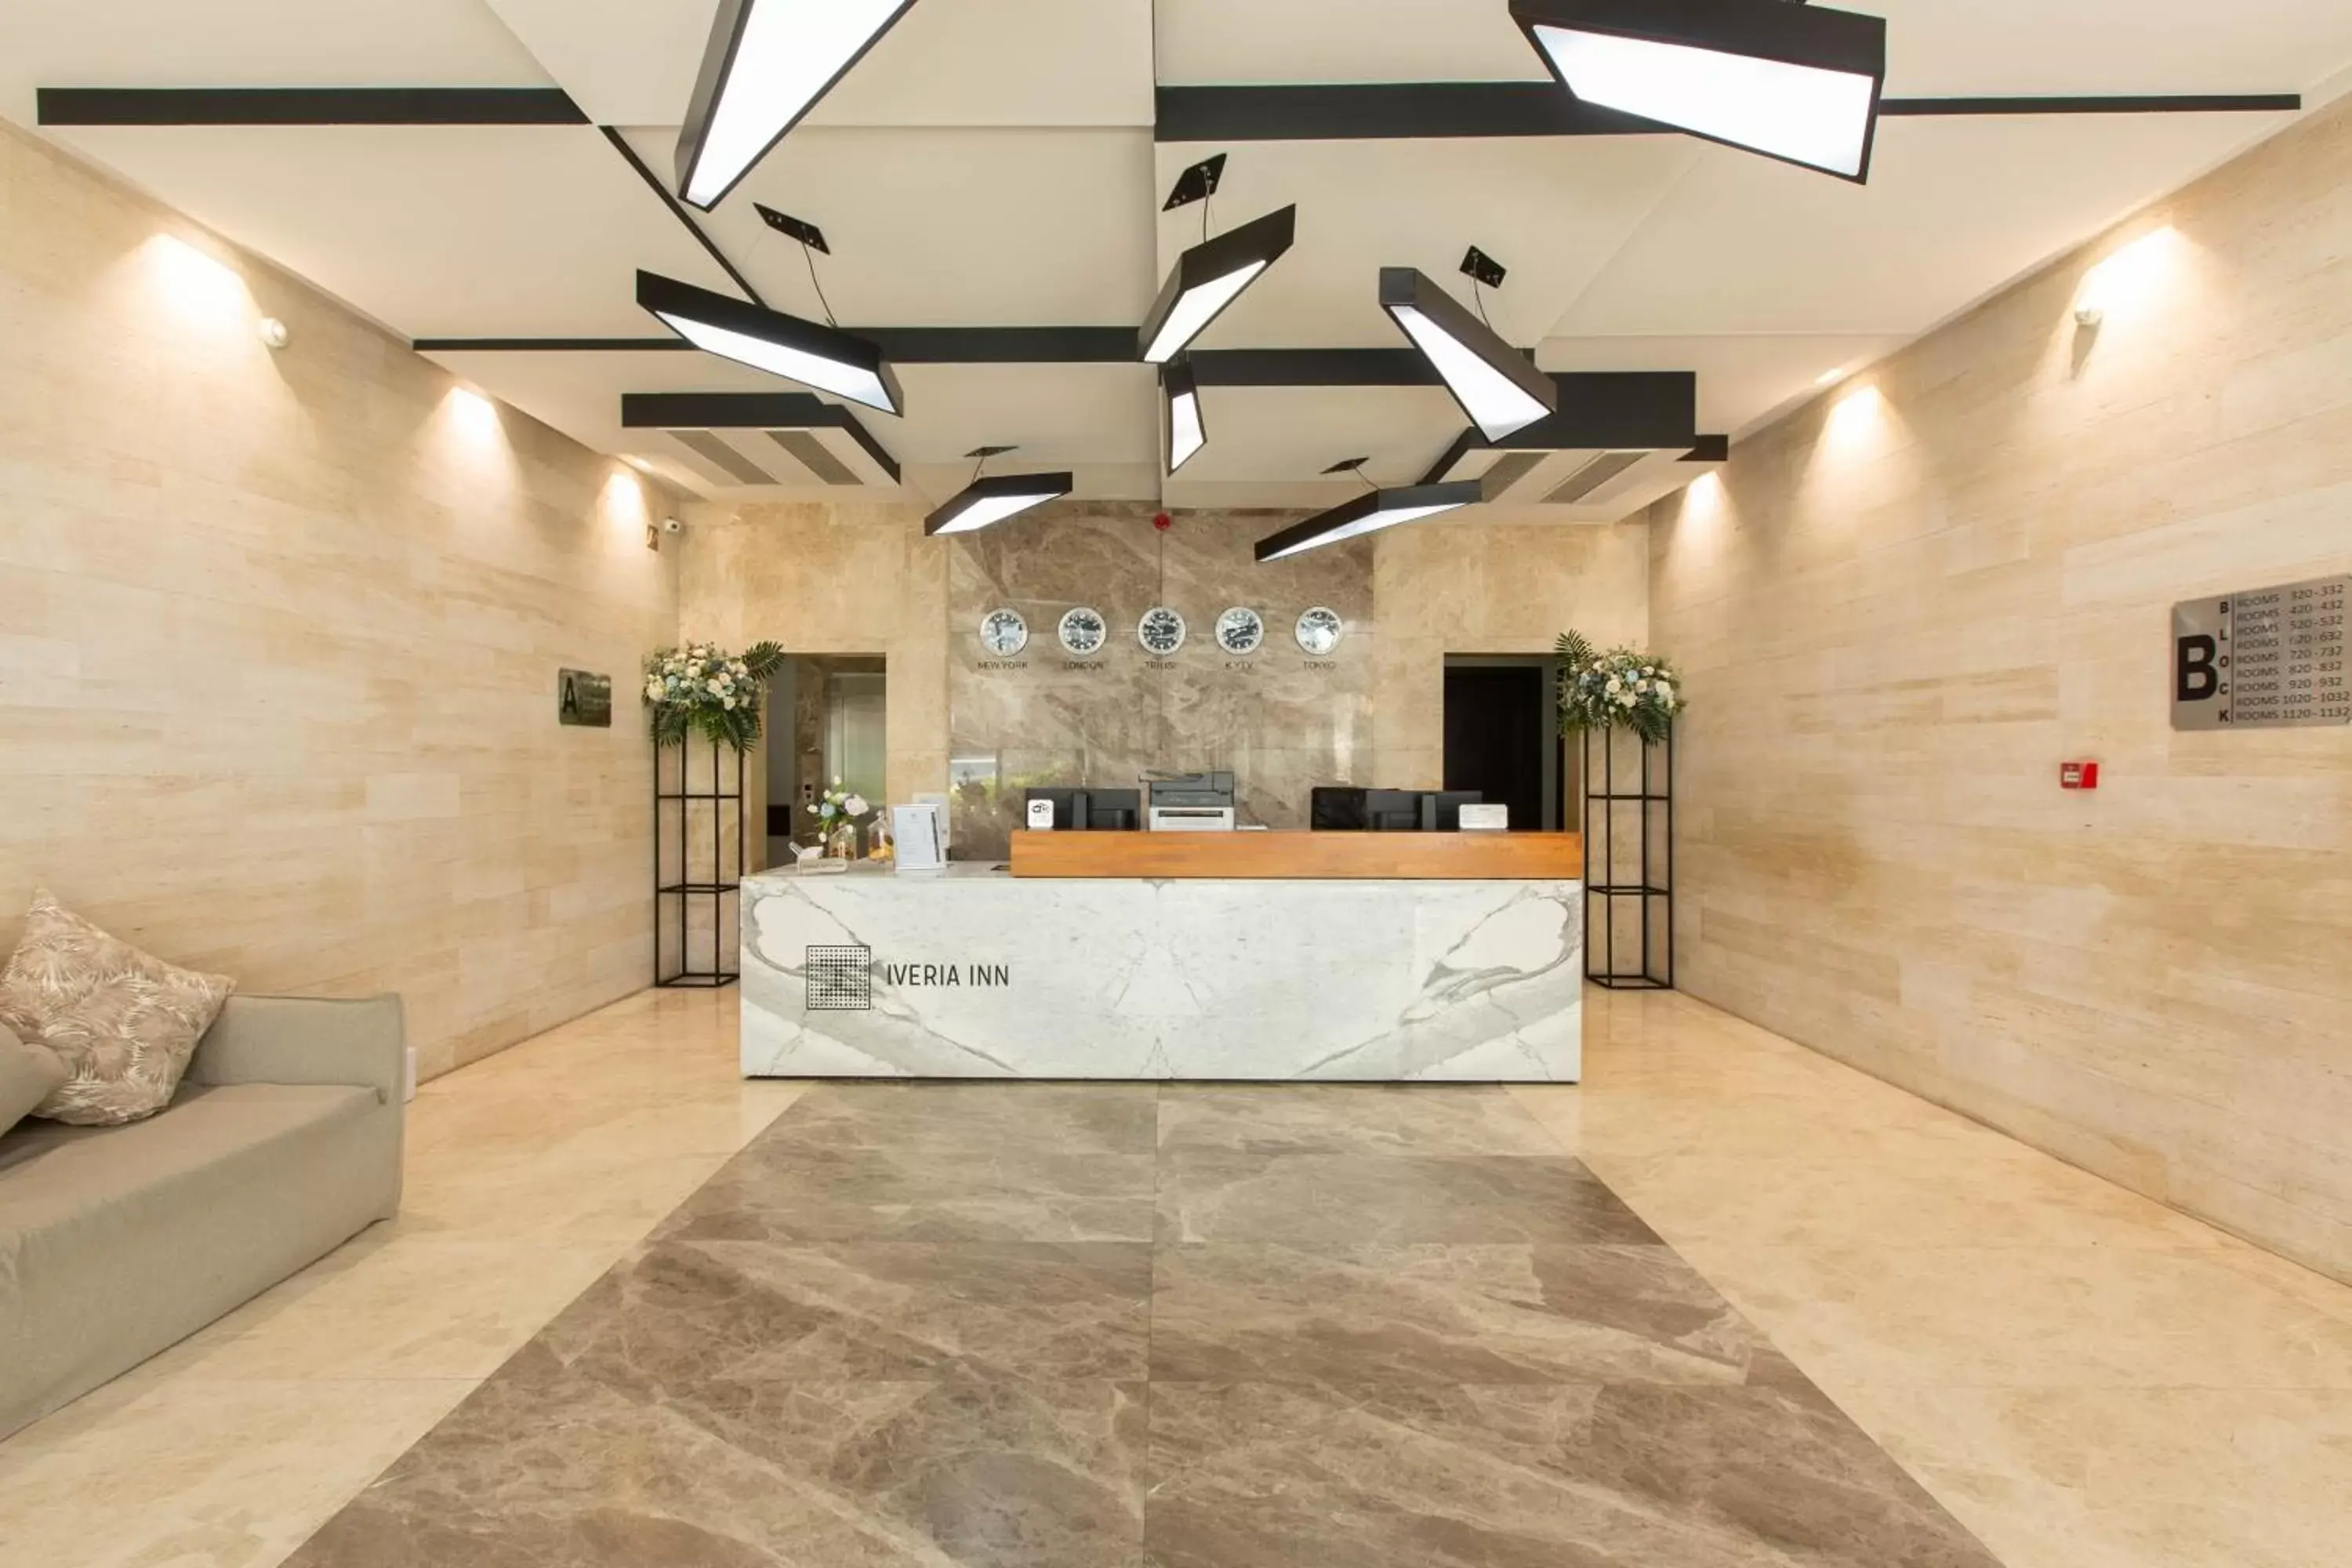 Lobby or reception, Lobby/Reception in Iveria Inn Hotel